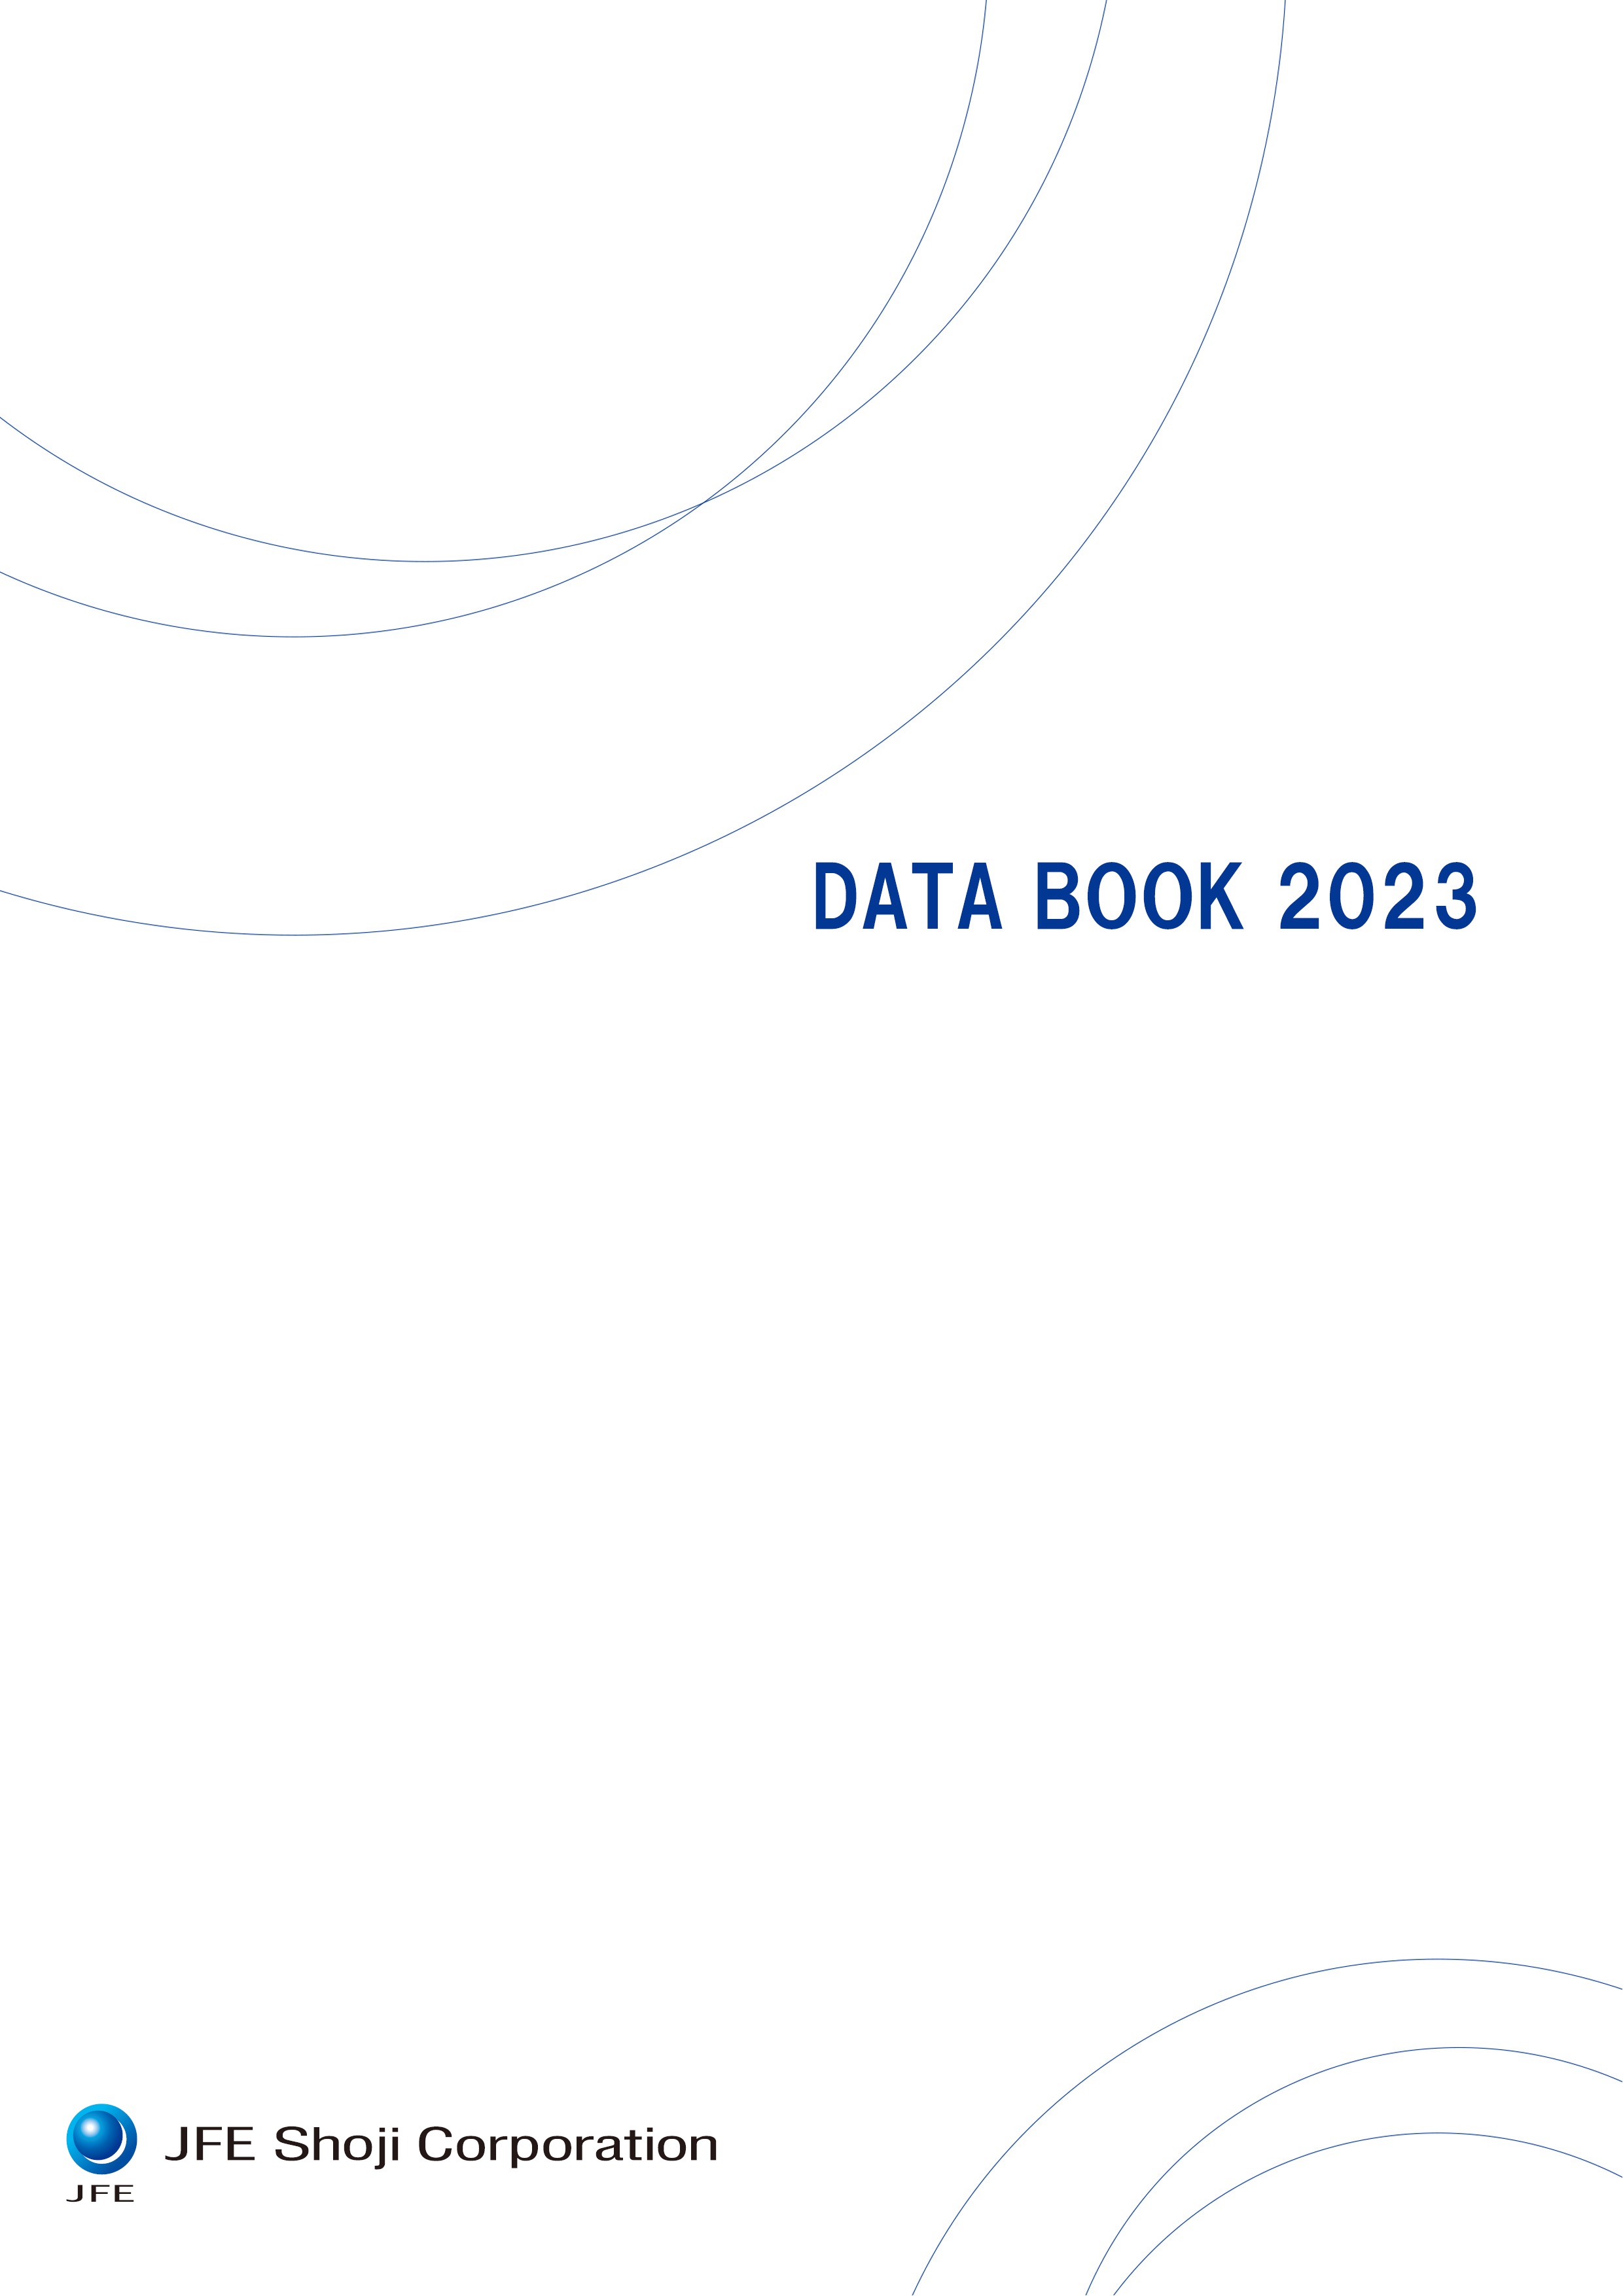 DATA BOOK 2022